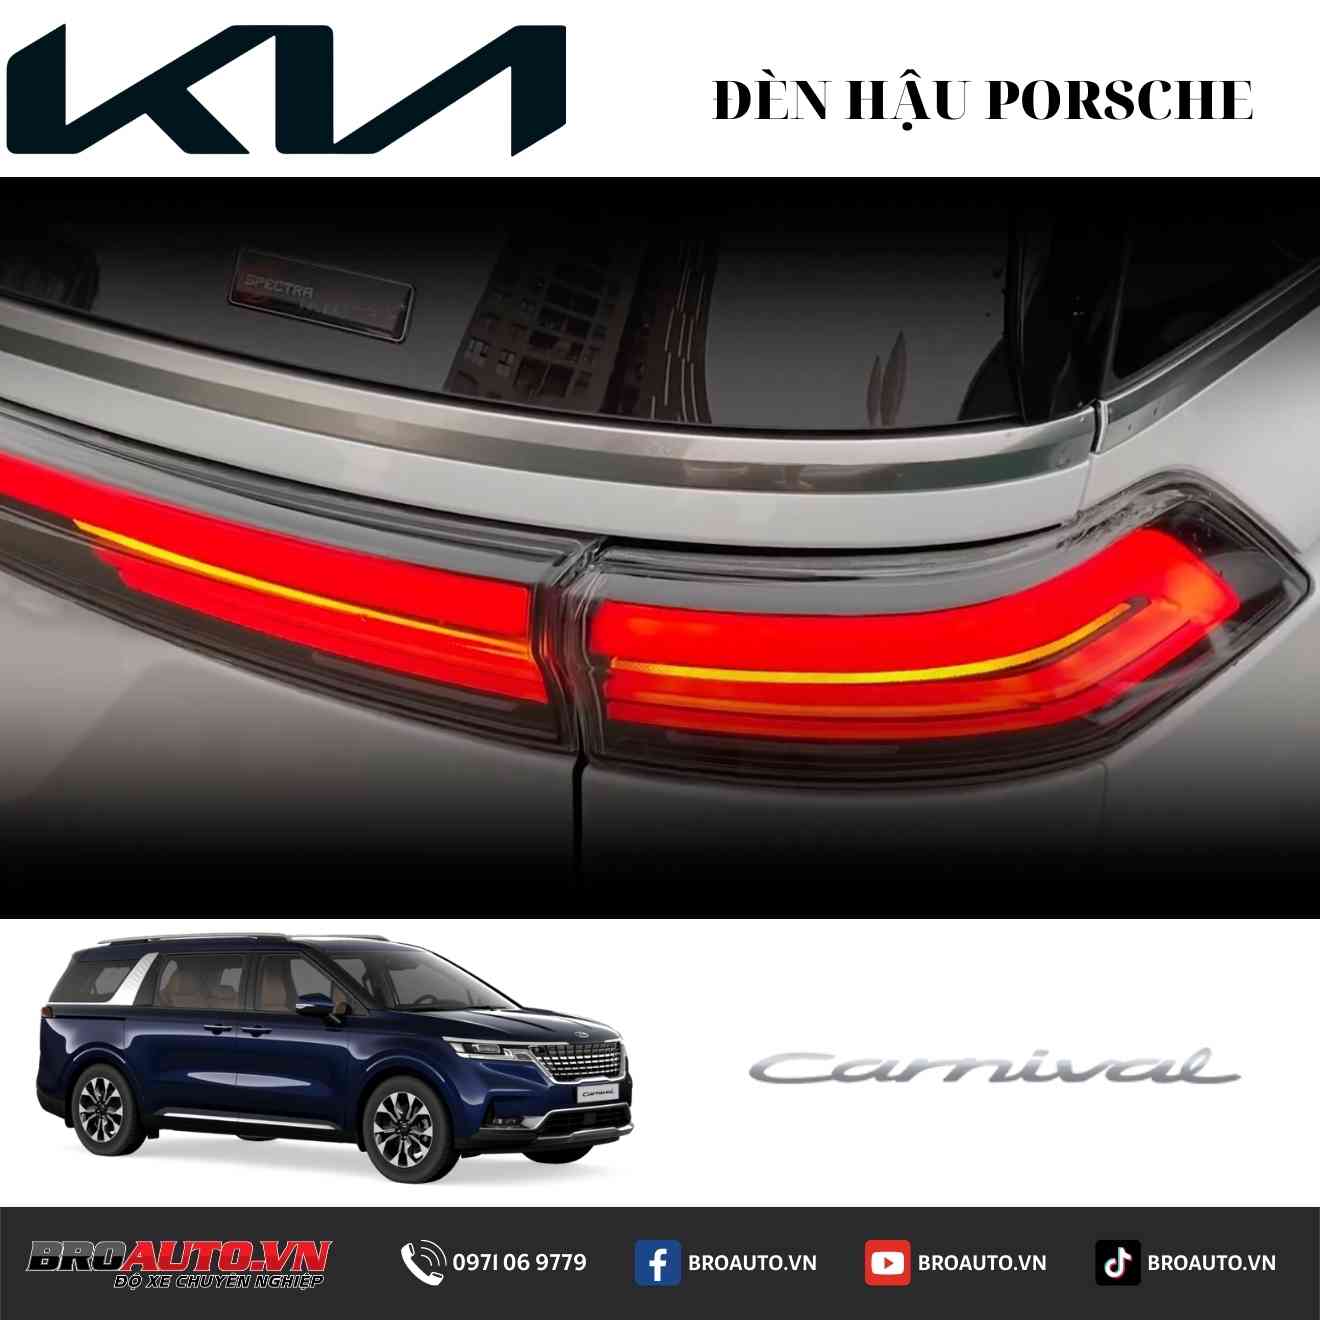 Độ đèn hậu Porsche cho Kia Carnival giúp tăng sáng hiệu quả 